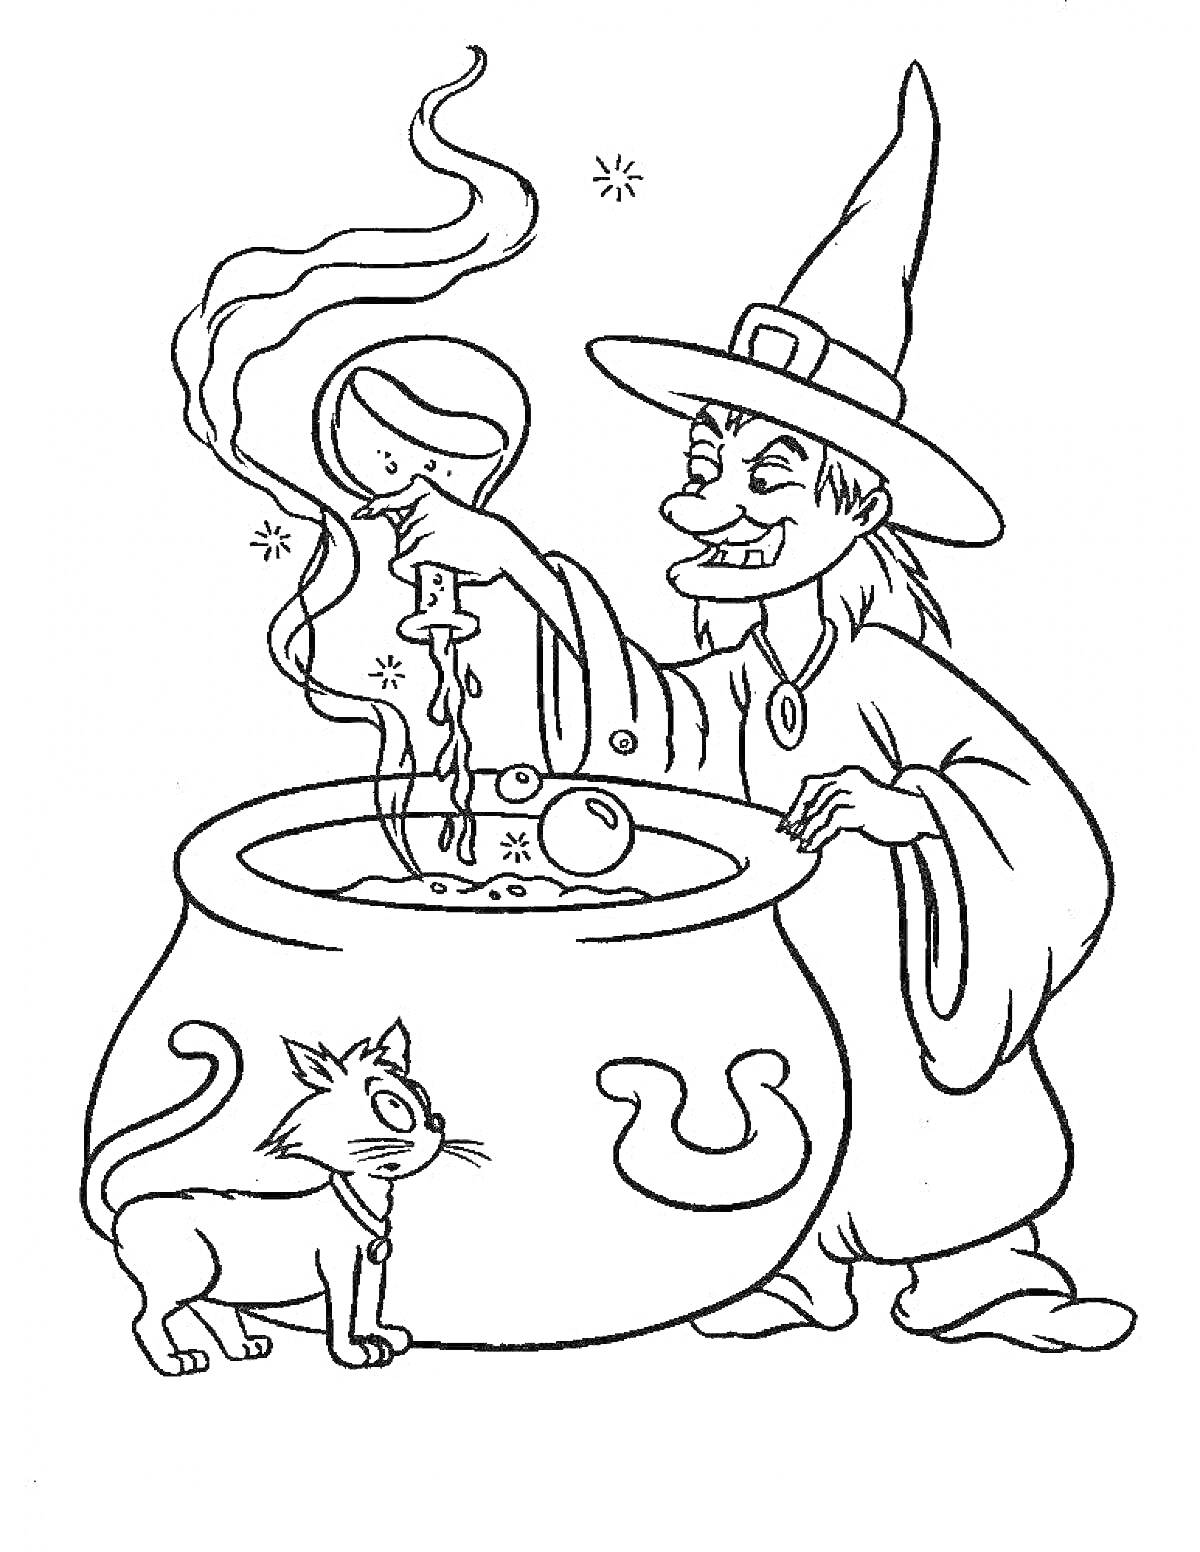 Ведьма с котлом и котом, держащая магический шар